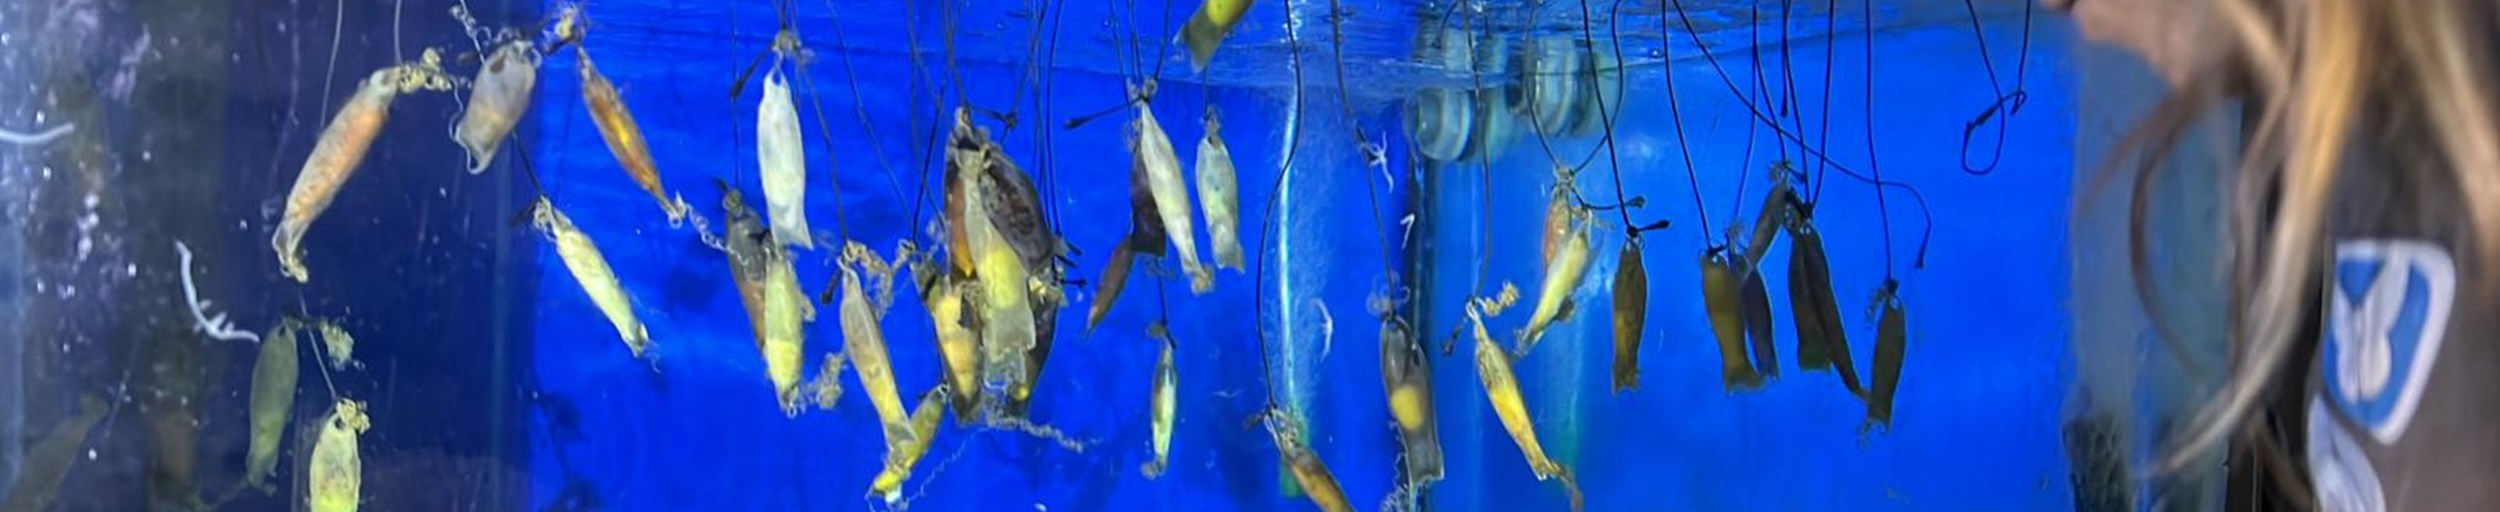 Katzenhai-Eier im Aquarium